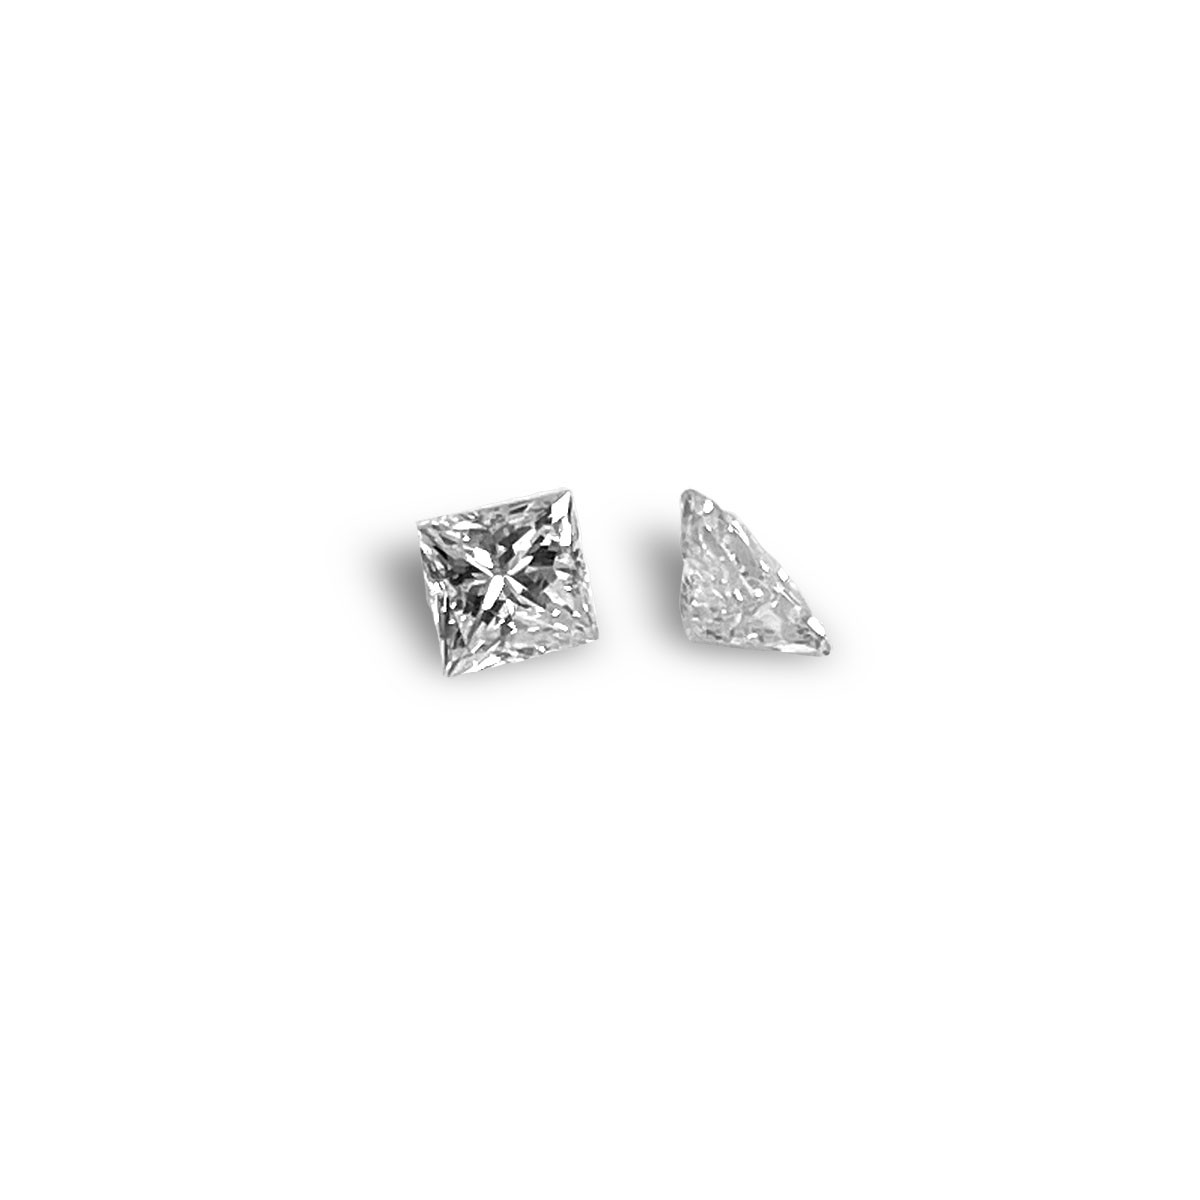 2 Diamants blancs forme carrée taille princesse qualité H/I P1, 0.77 ct.